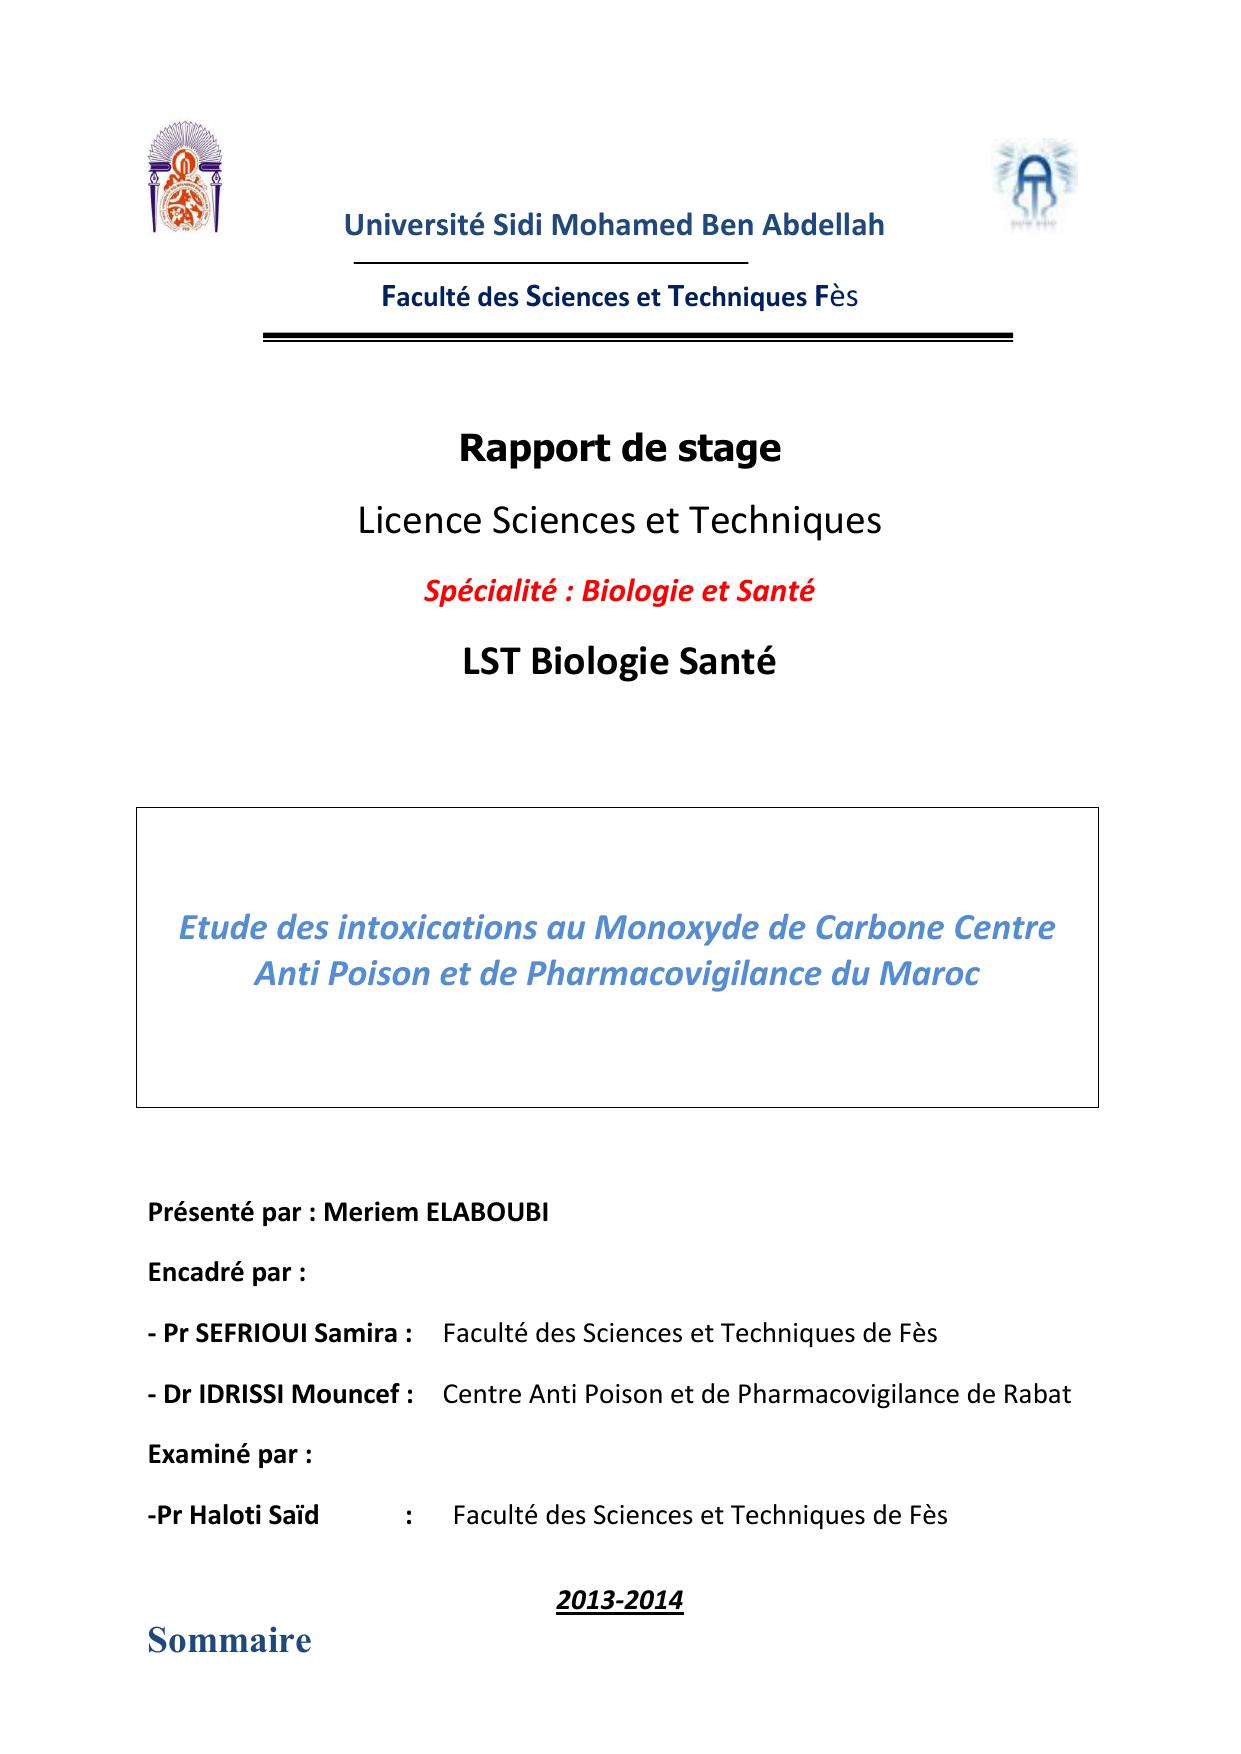 Etude des intoxications au Monoxyde de Carbone Centre Anti Poison et de Pharmacovigilance du Maroc